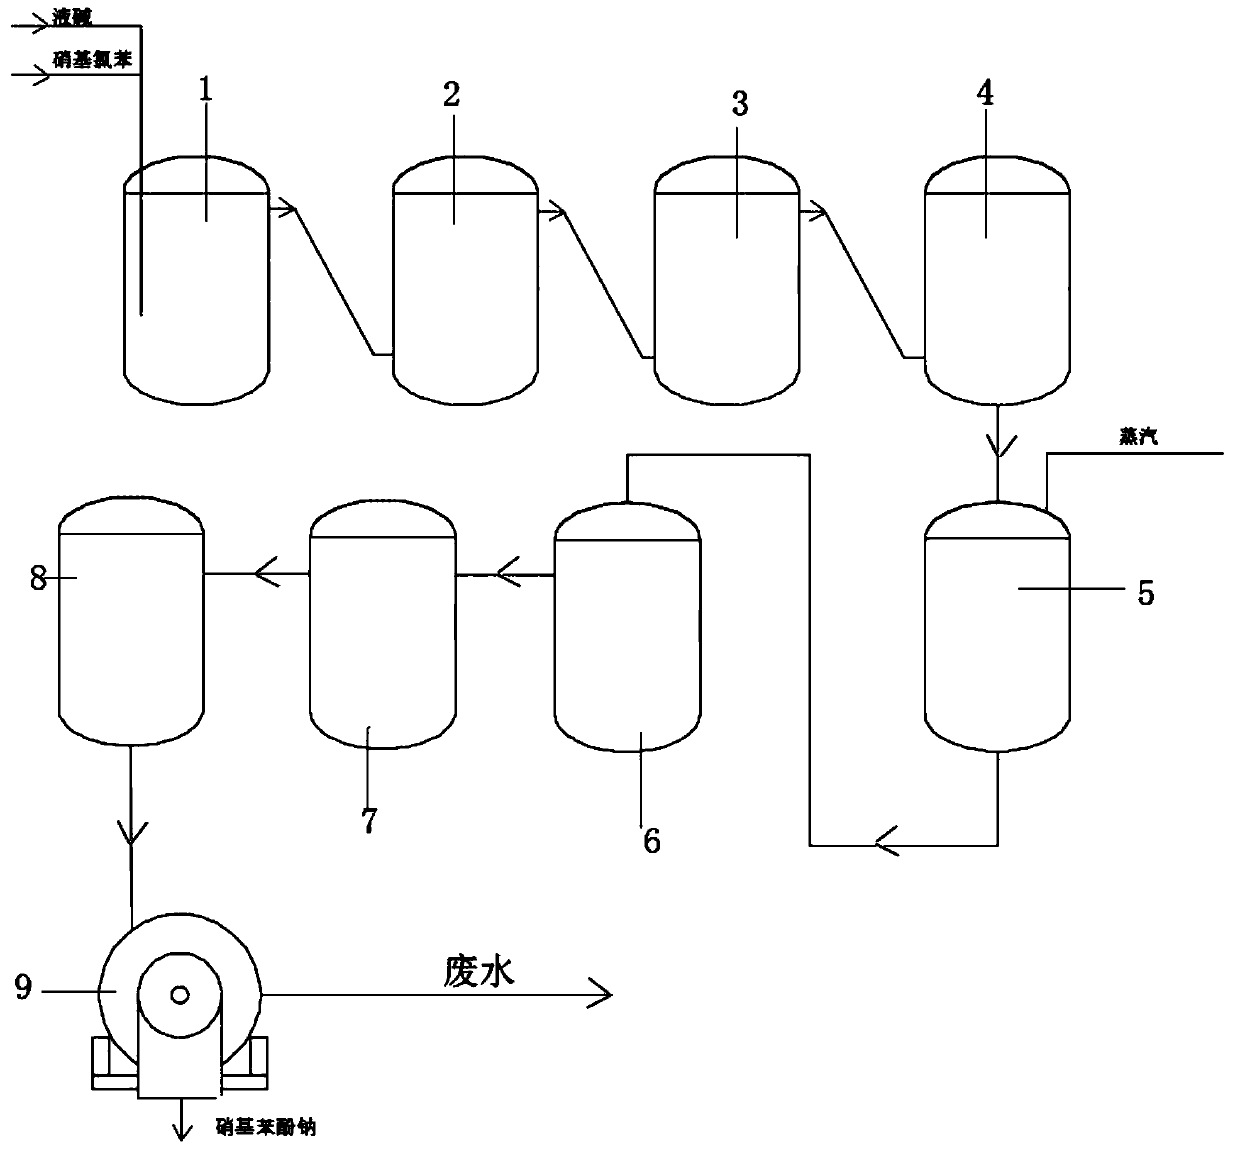 Process for synthesizing sodium nitrophenolate by continuously hydrolyzing nitrochlorobenzene